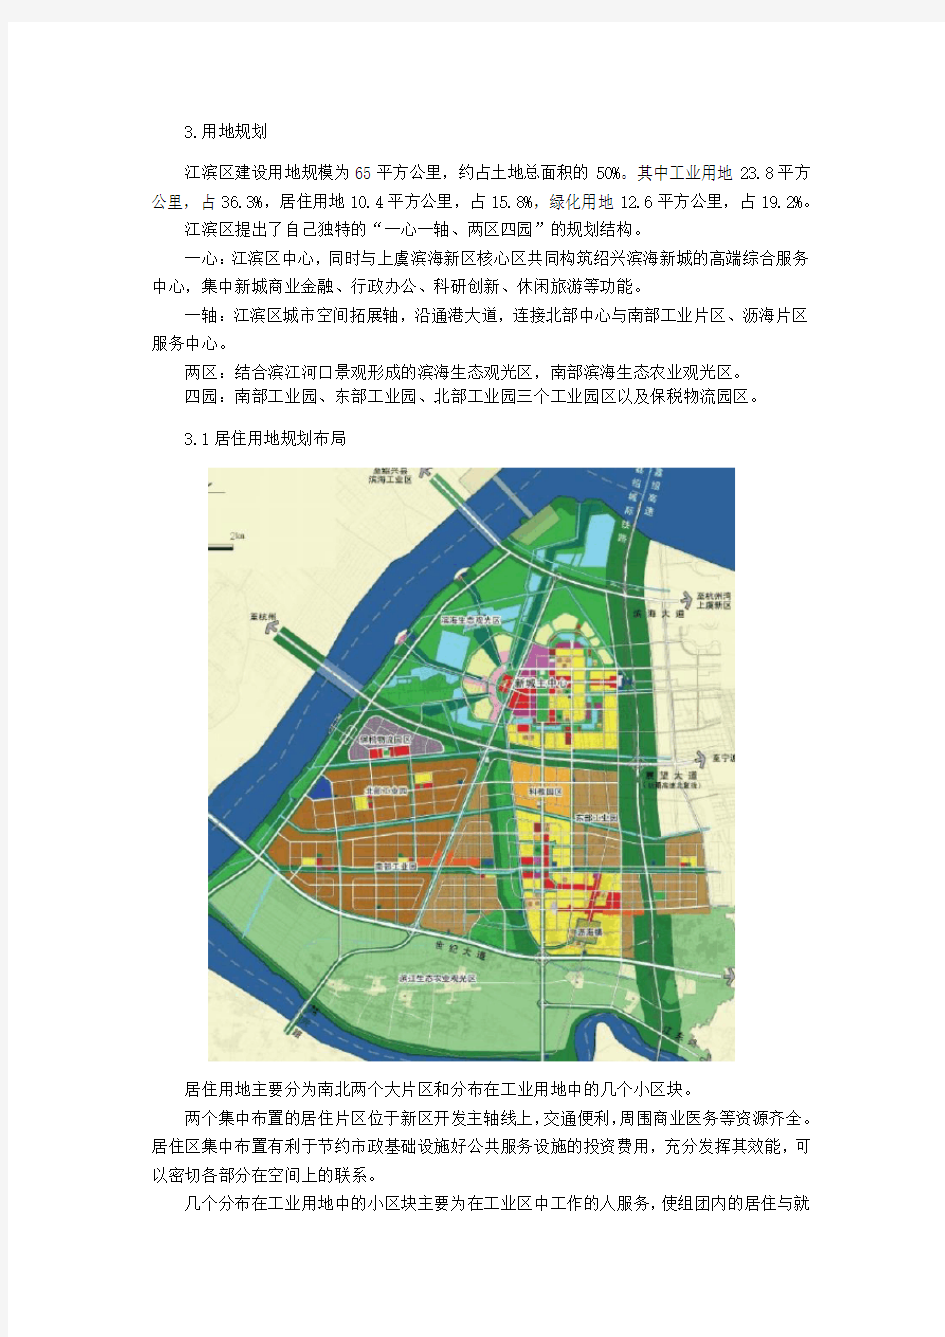 绍兴滨海新城区域分析